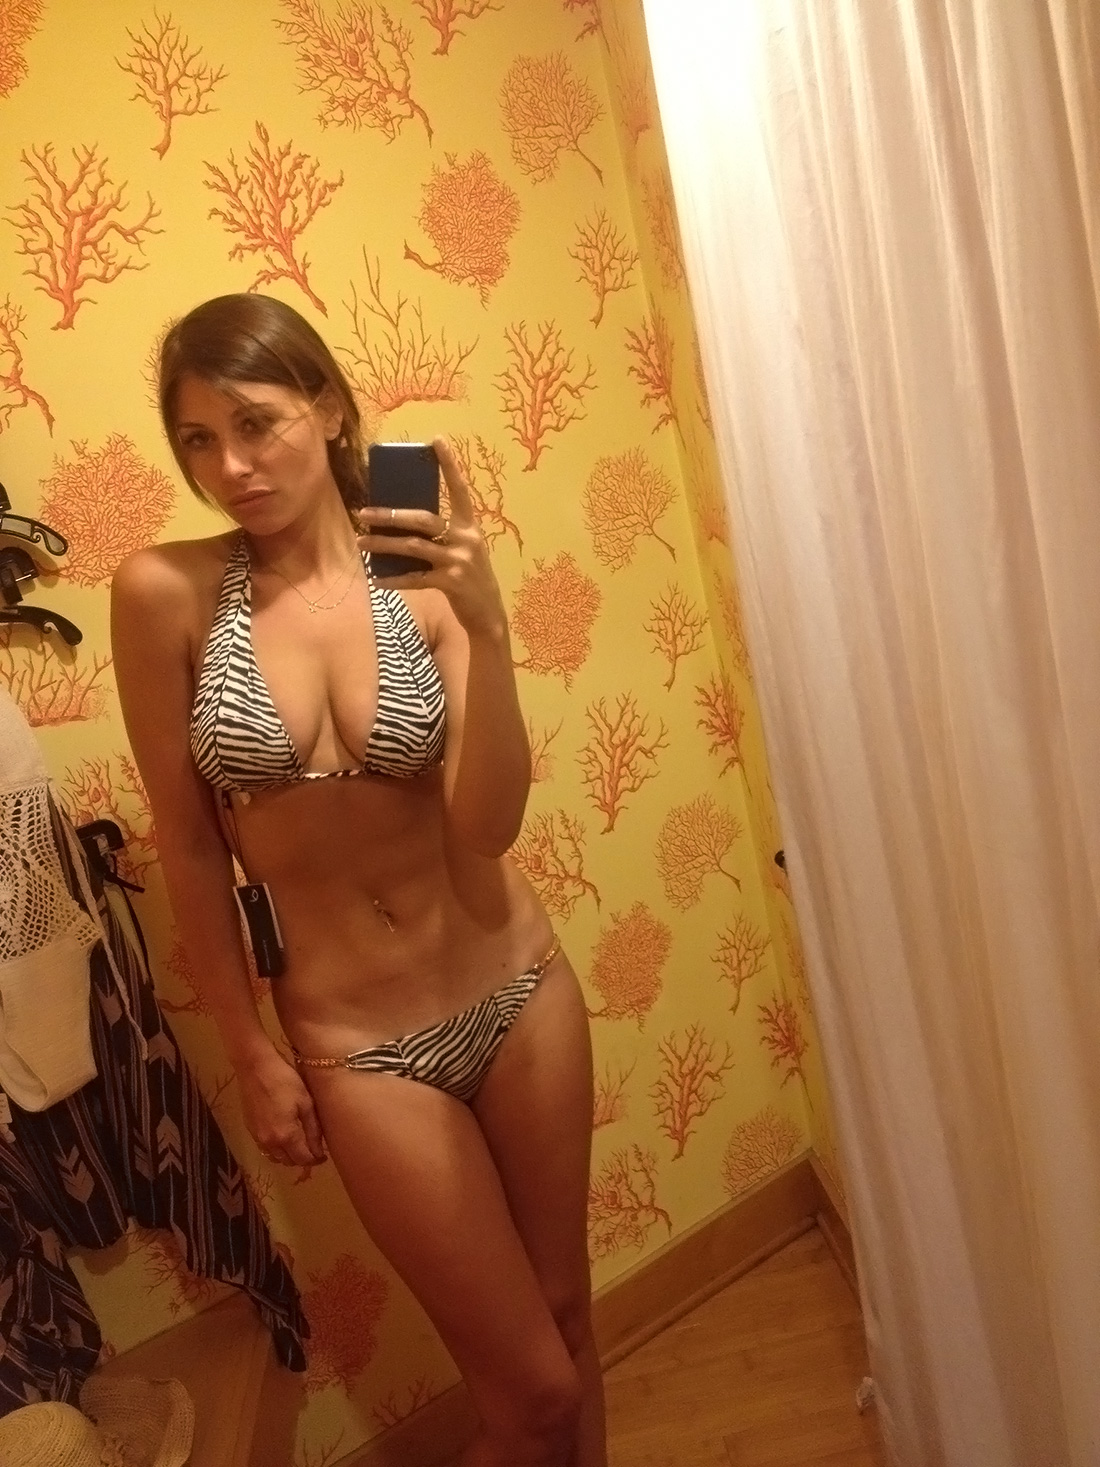 Aly Michalka bikini